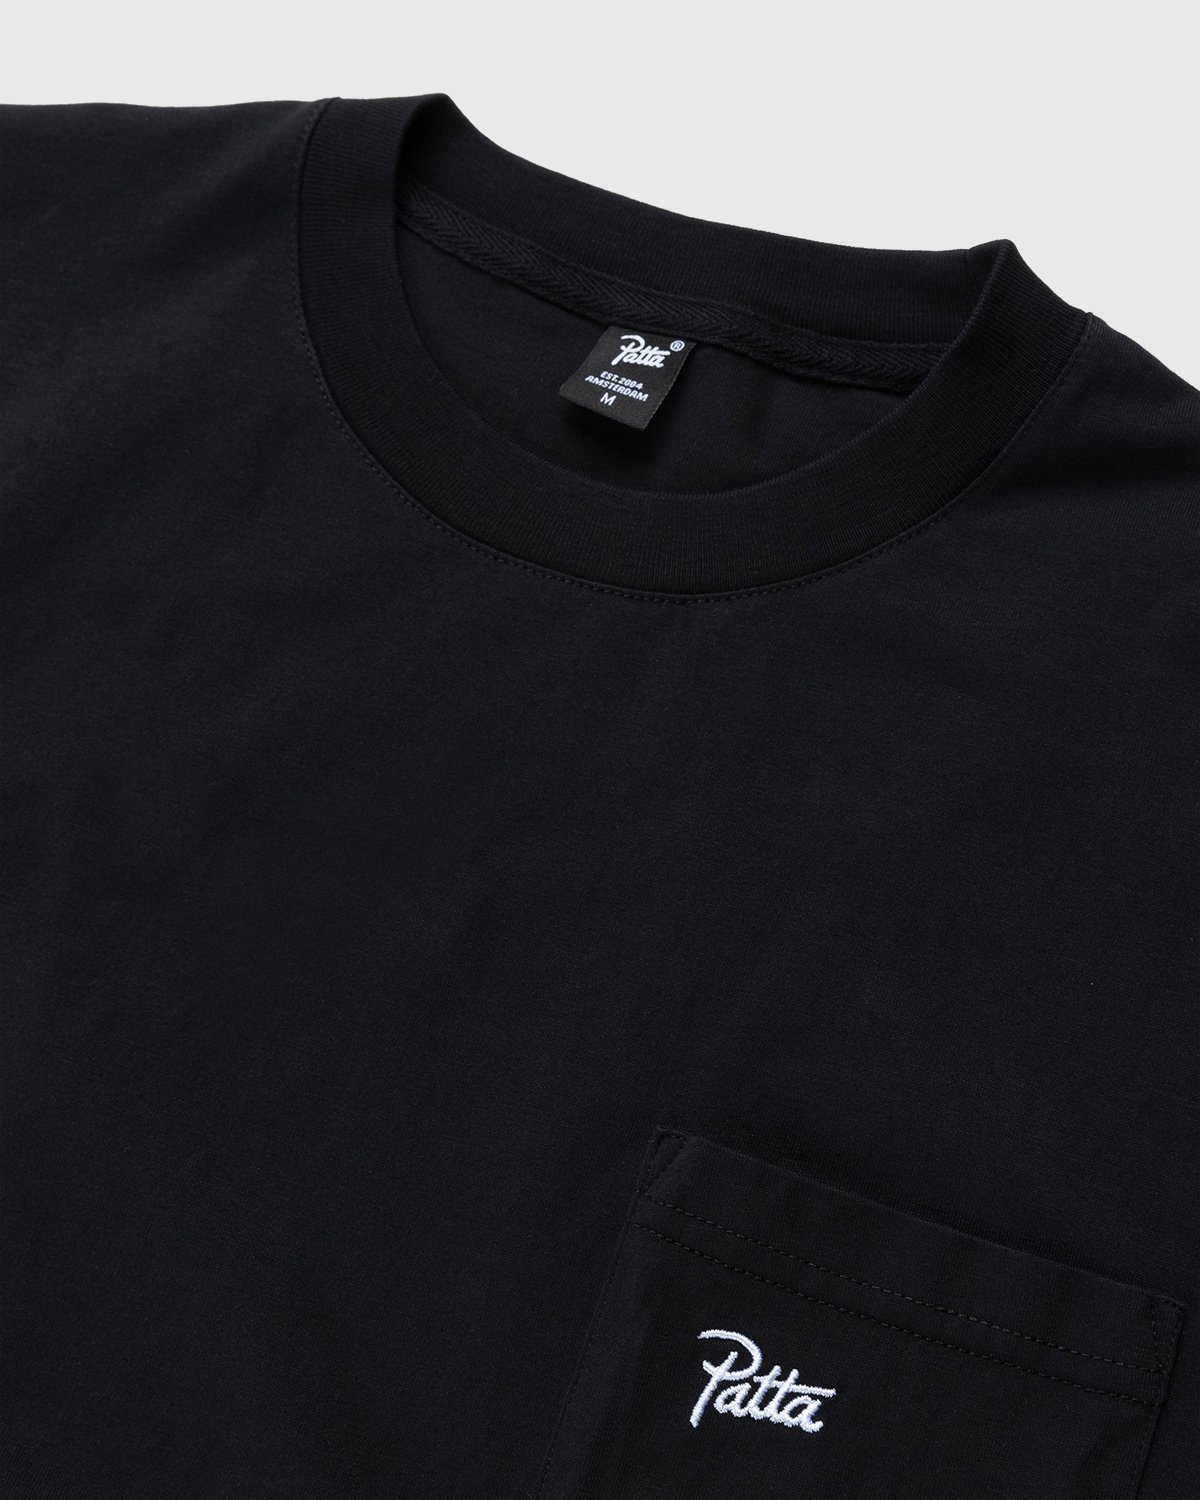 Patta - Basic Washed Pocket T-Shirt Black - Clothing - Black - Image 3